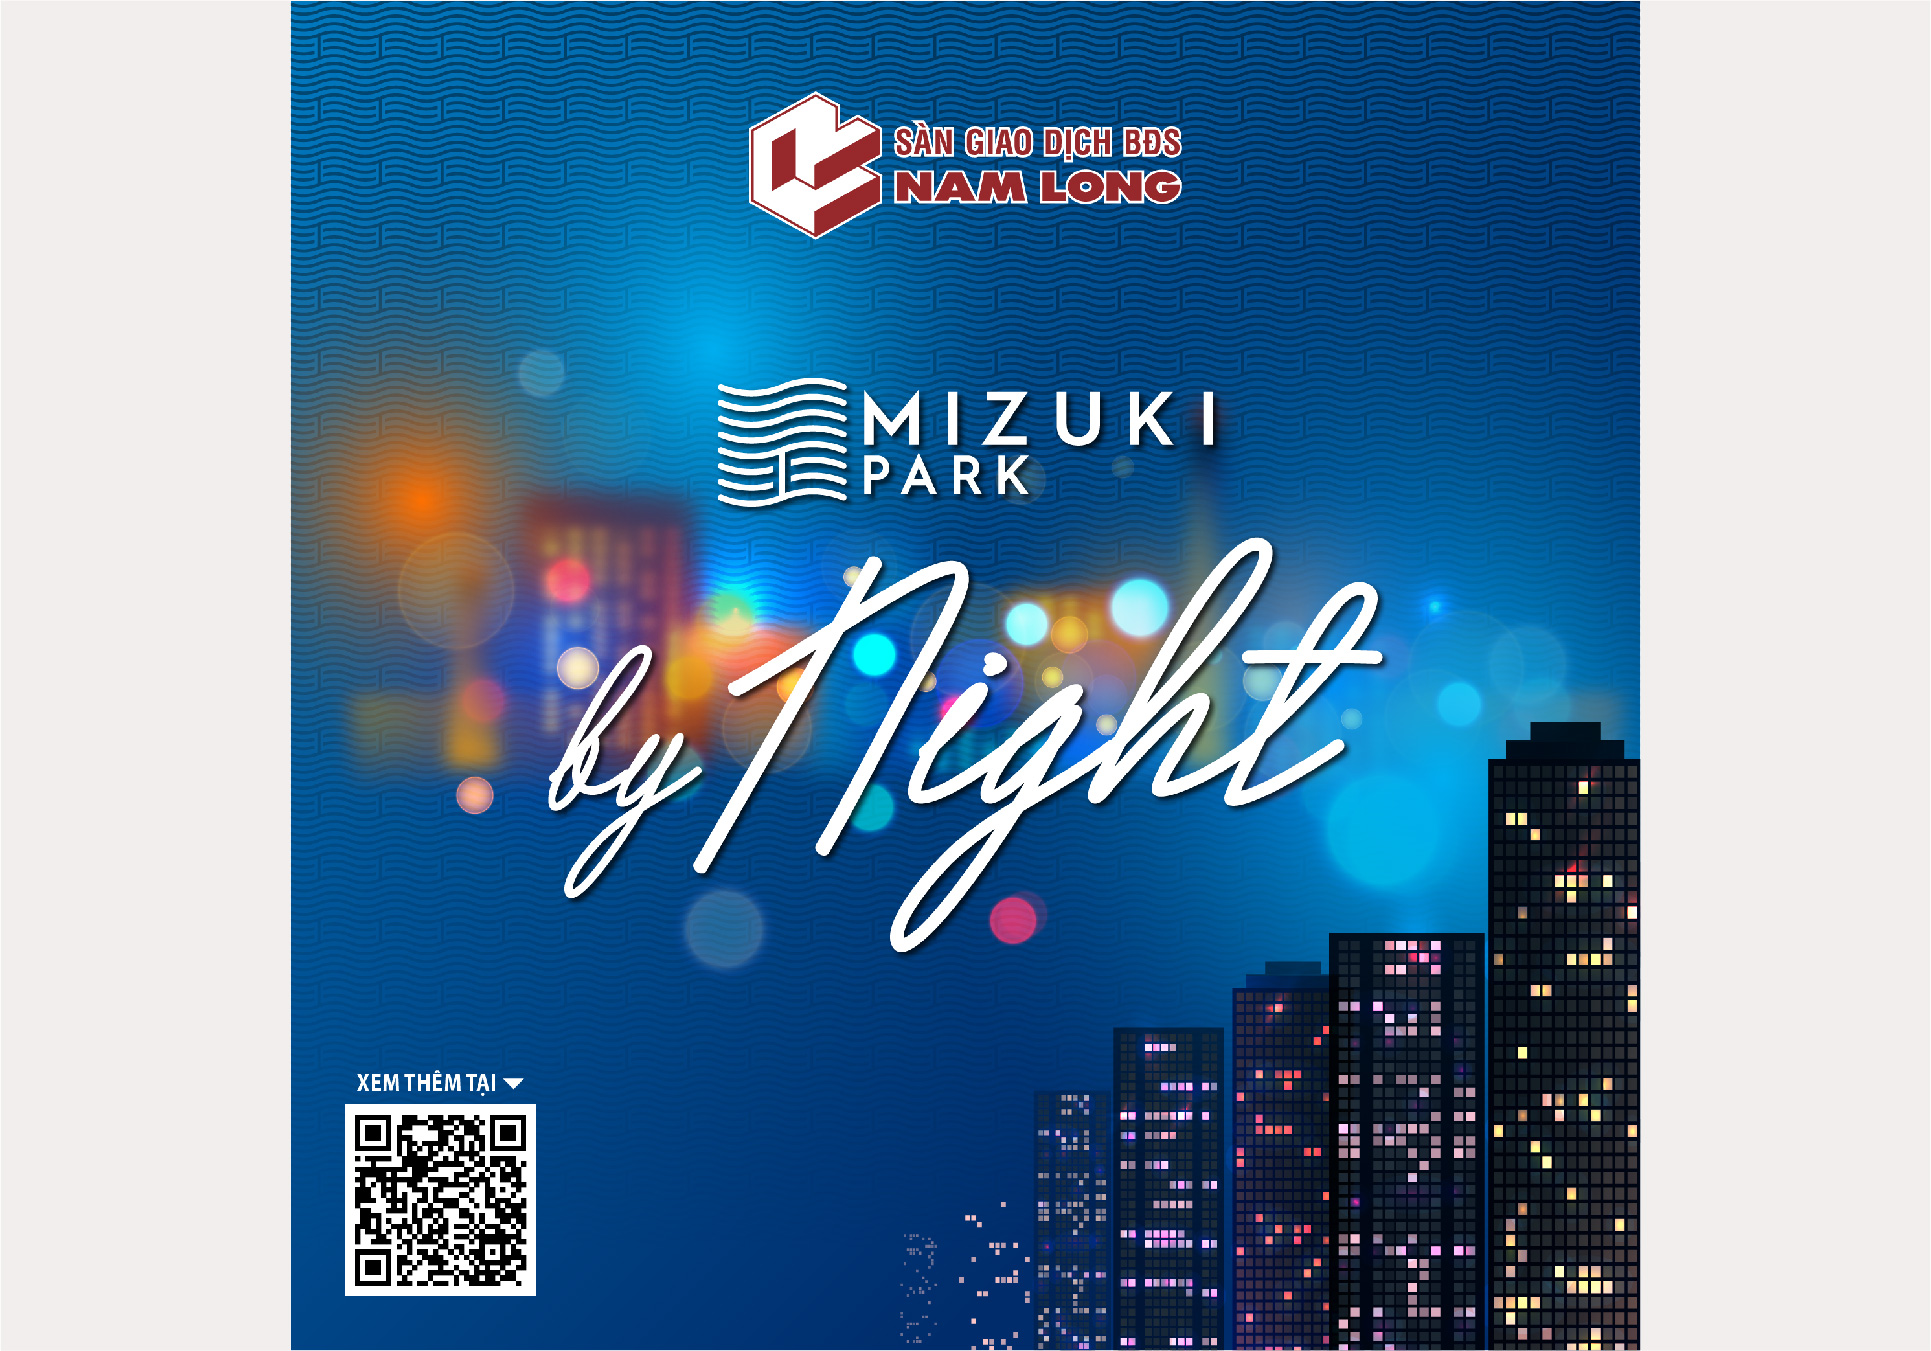 Mizuki Park by night